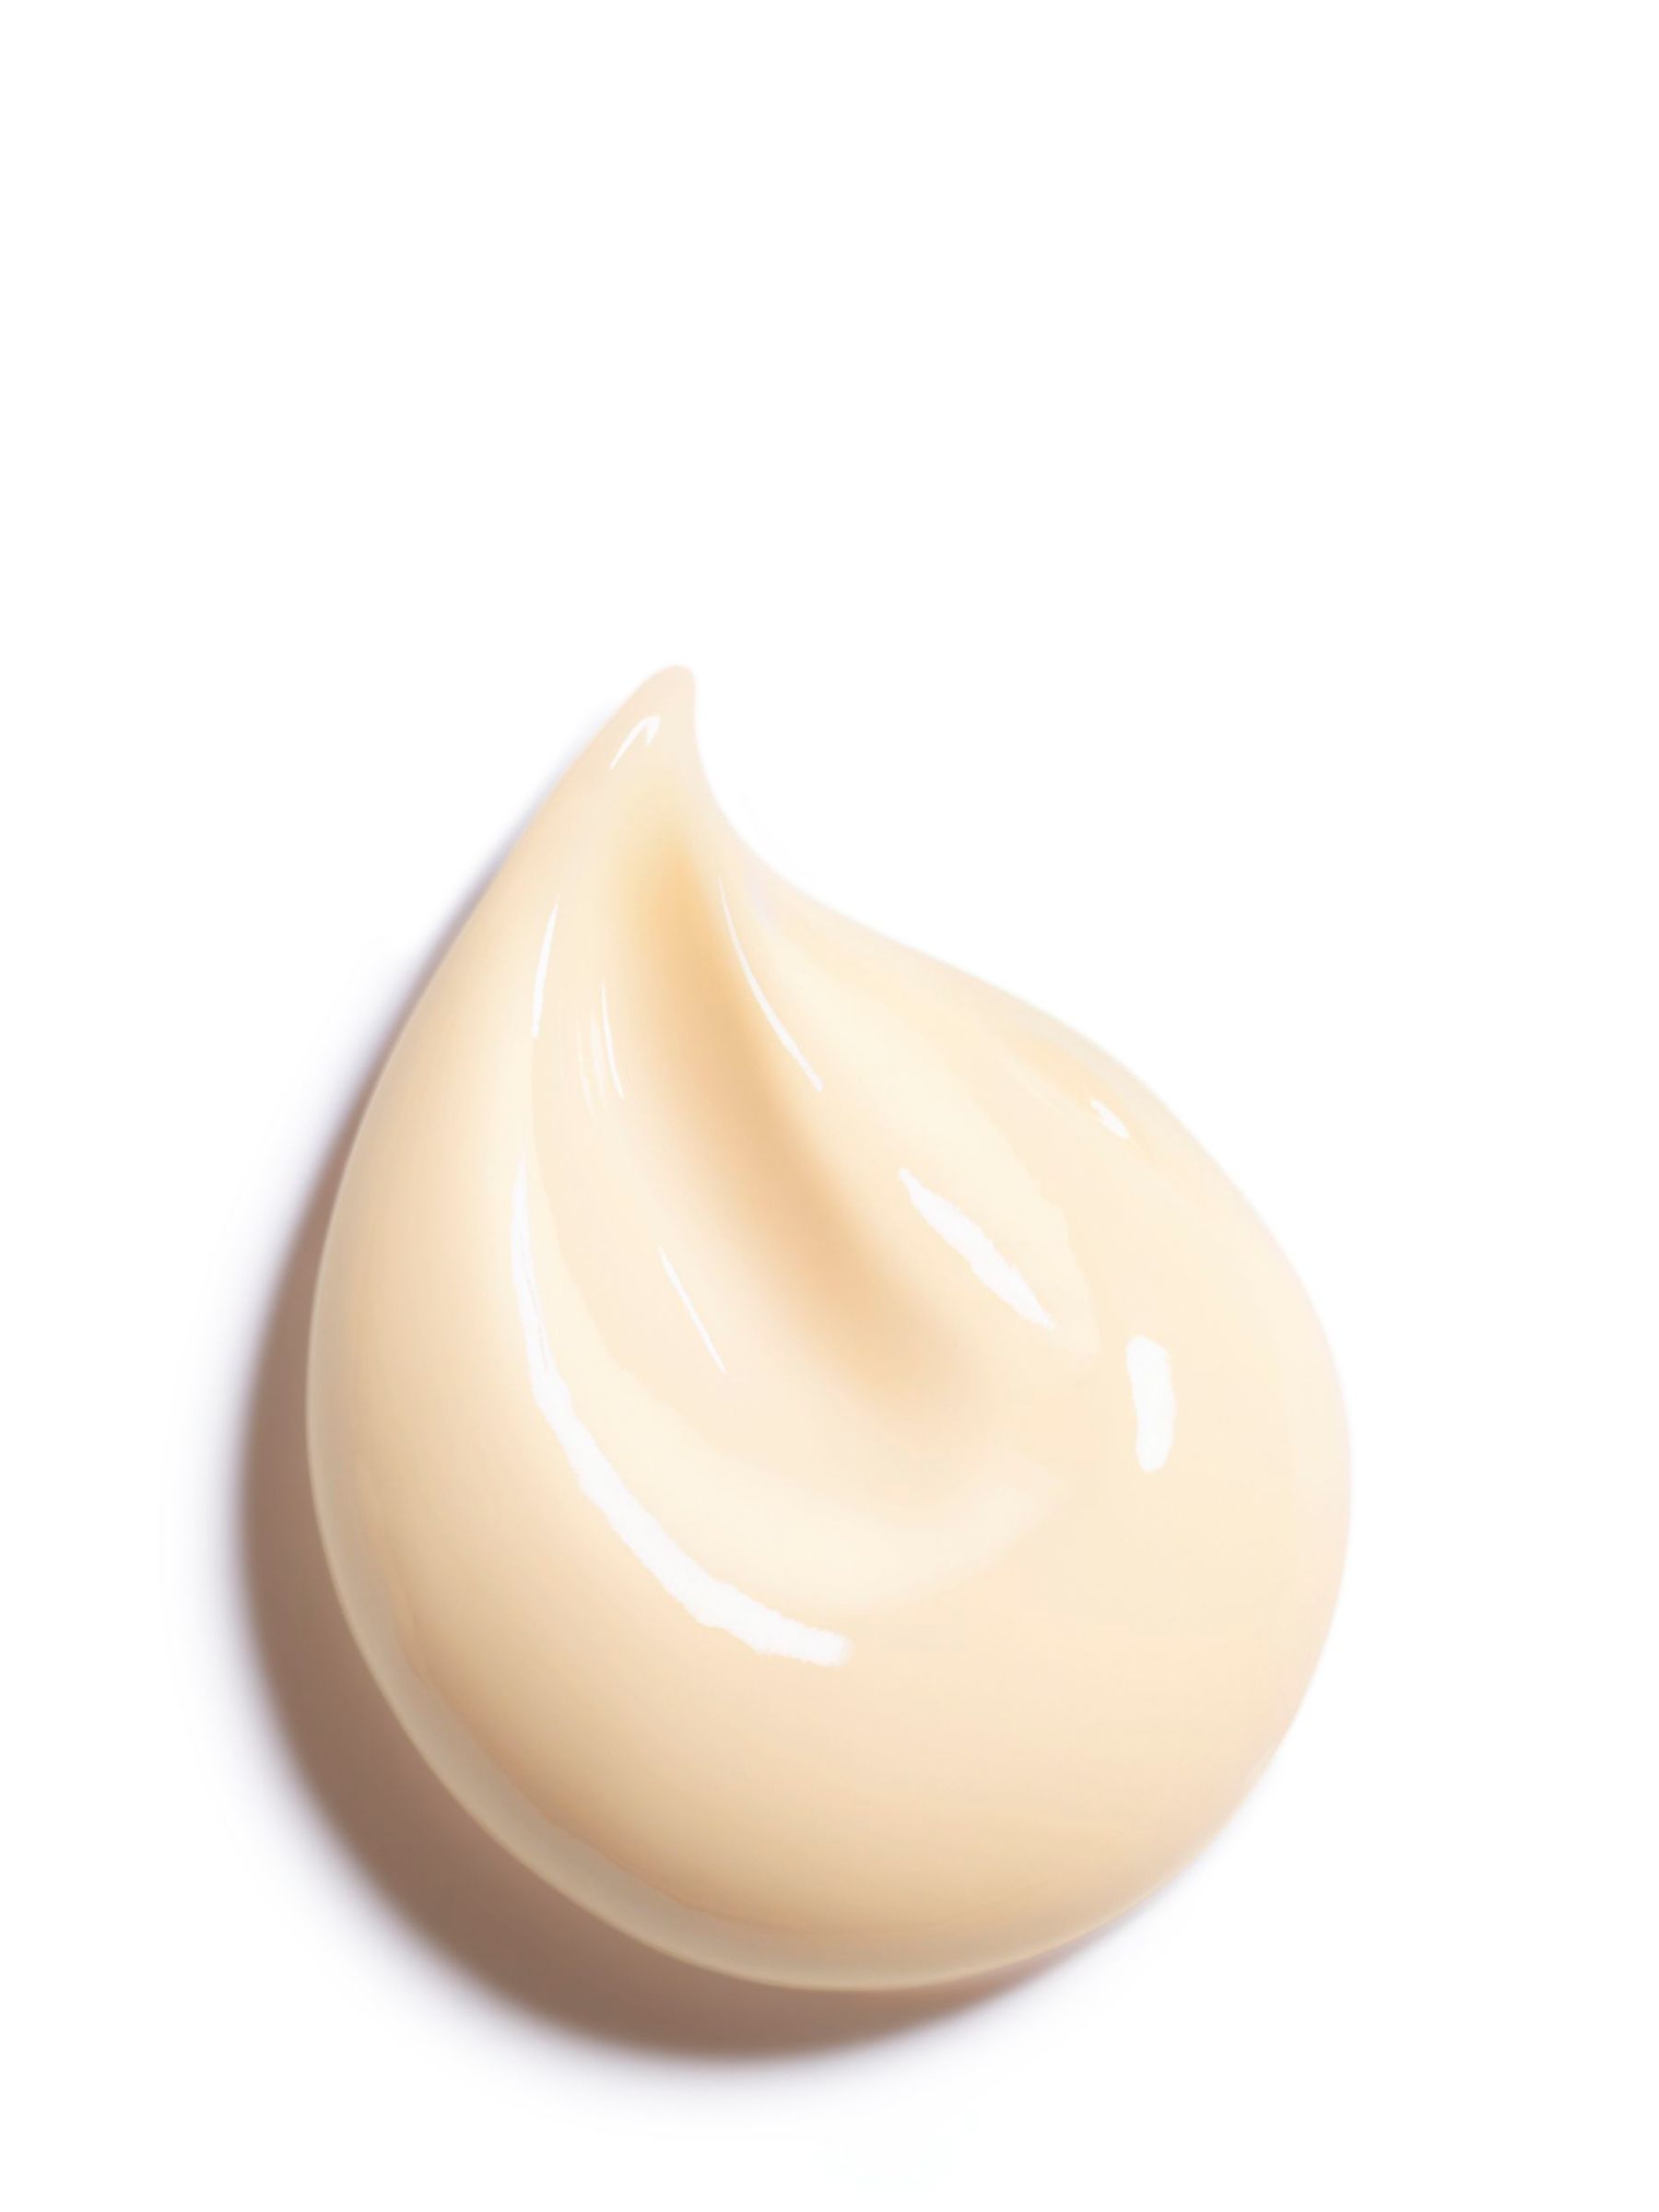 CHANEL Sublimage La Crème Texture Suprême Ultimate Cream Jar, 50g 3